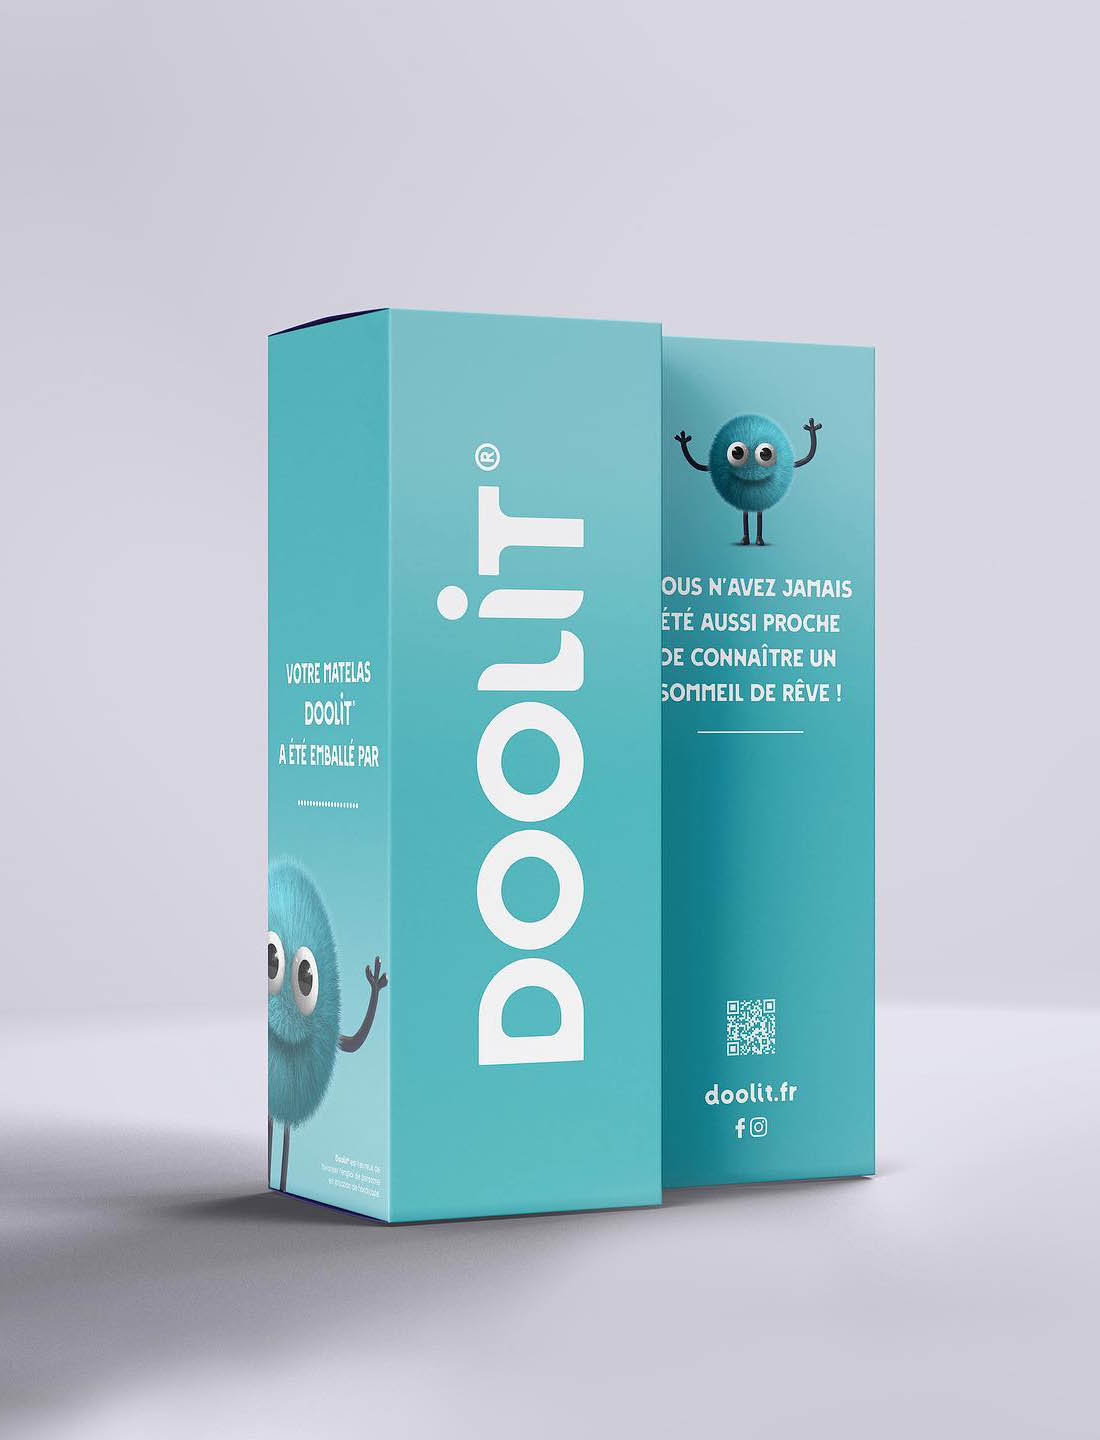 julien_cottaz_design_doolit_packaging